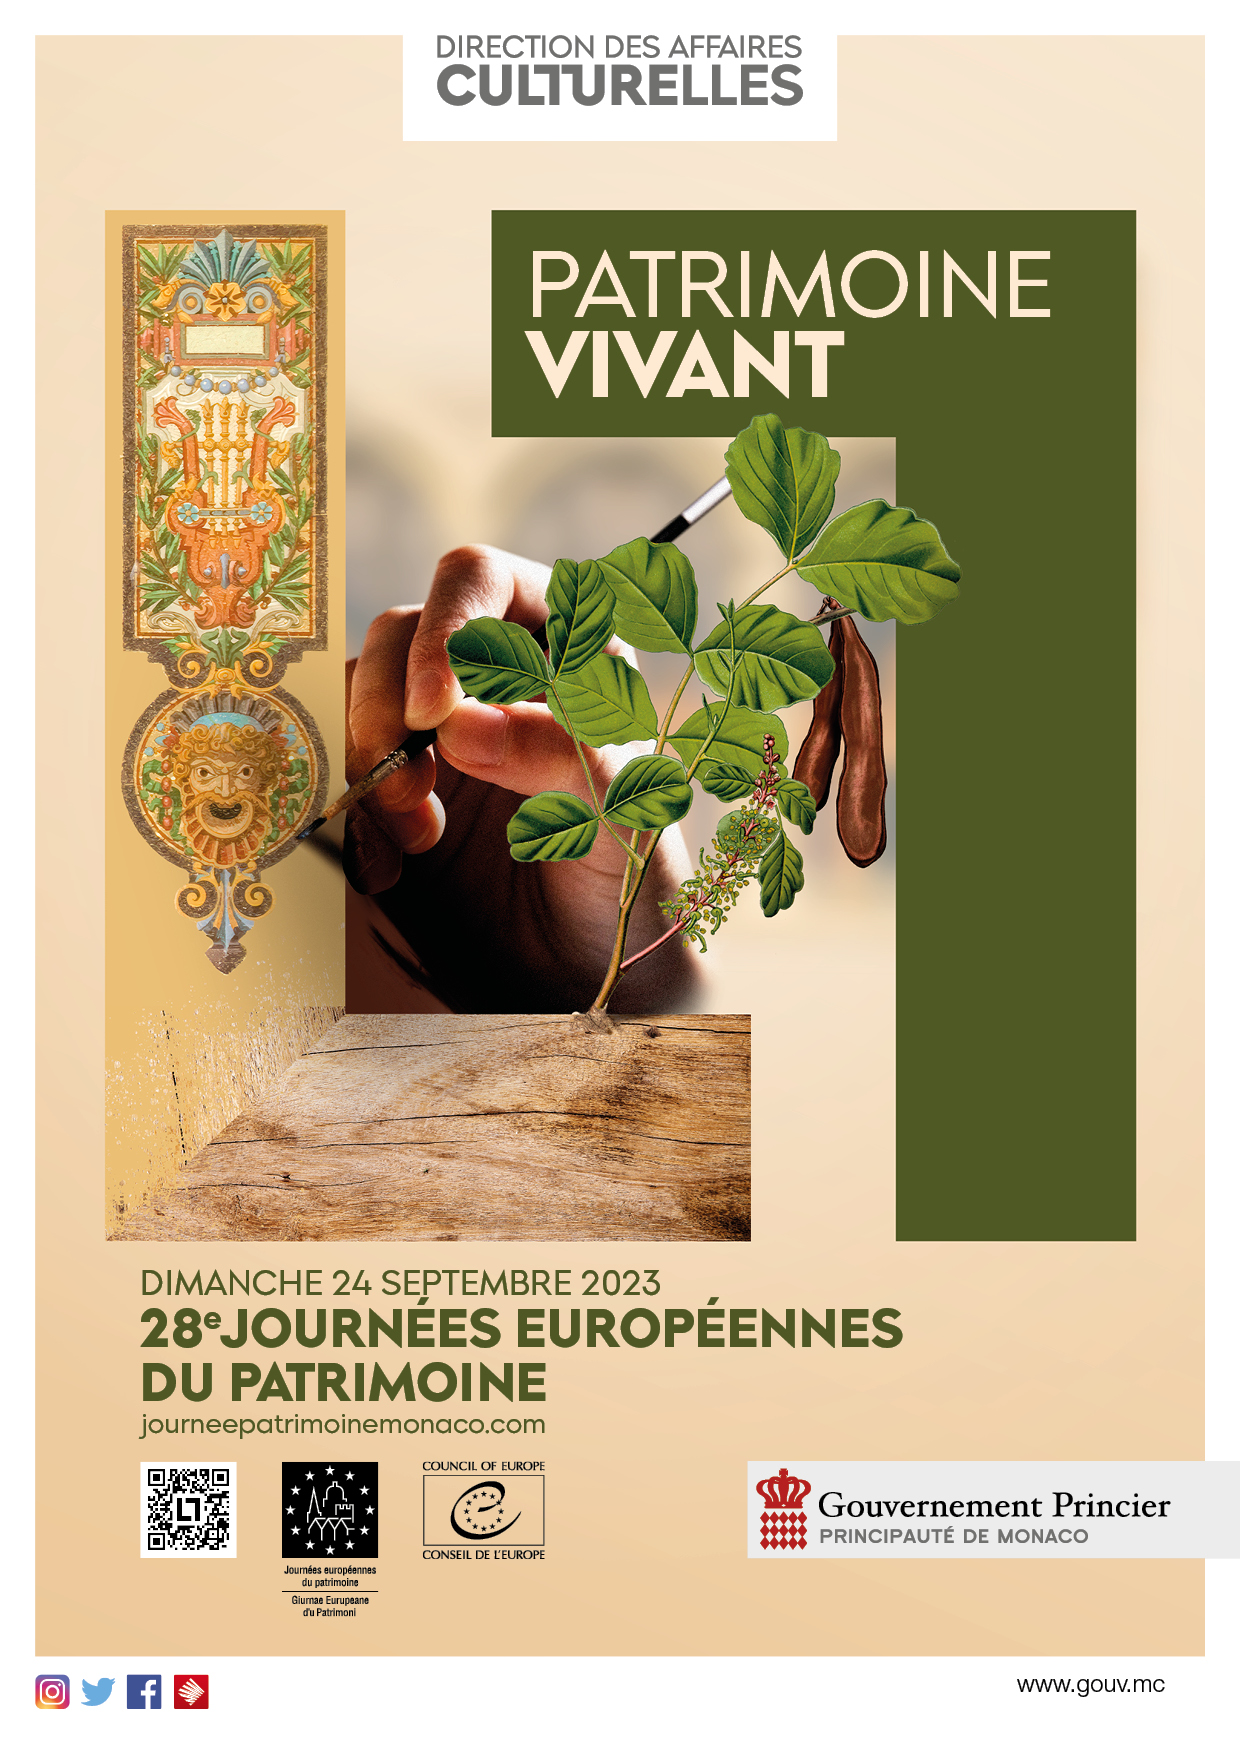 The Francis Bacon MB Art Foundation renews its participation in the “Journées Européennes du Patrimoine” in Monaco